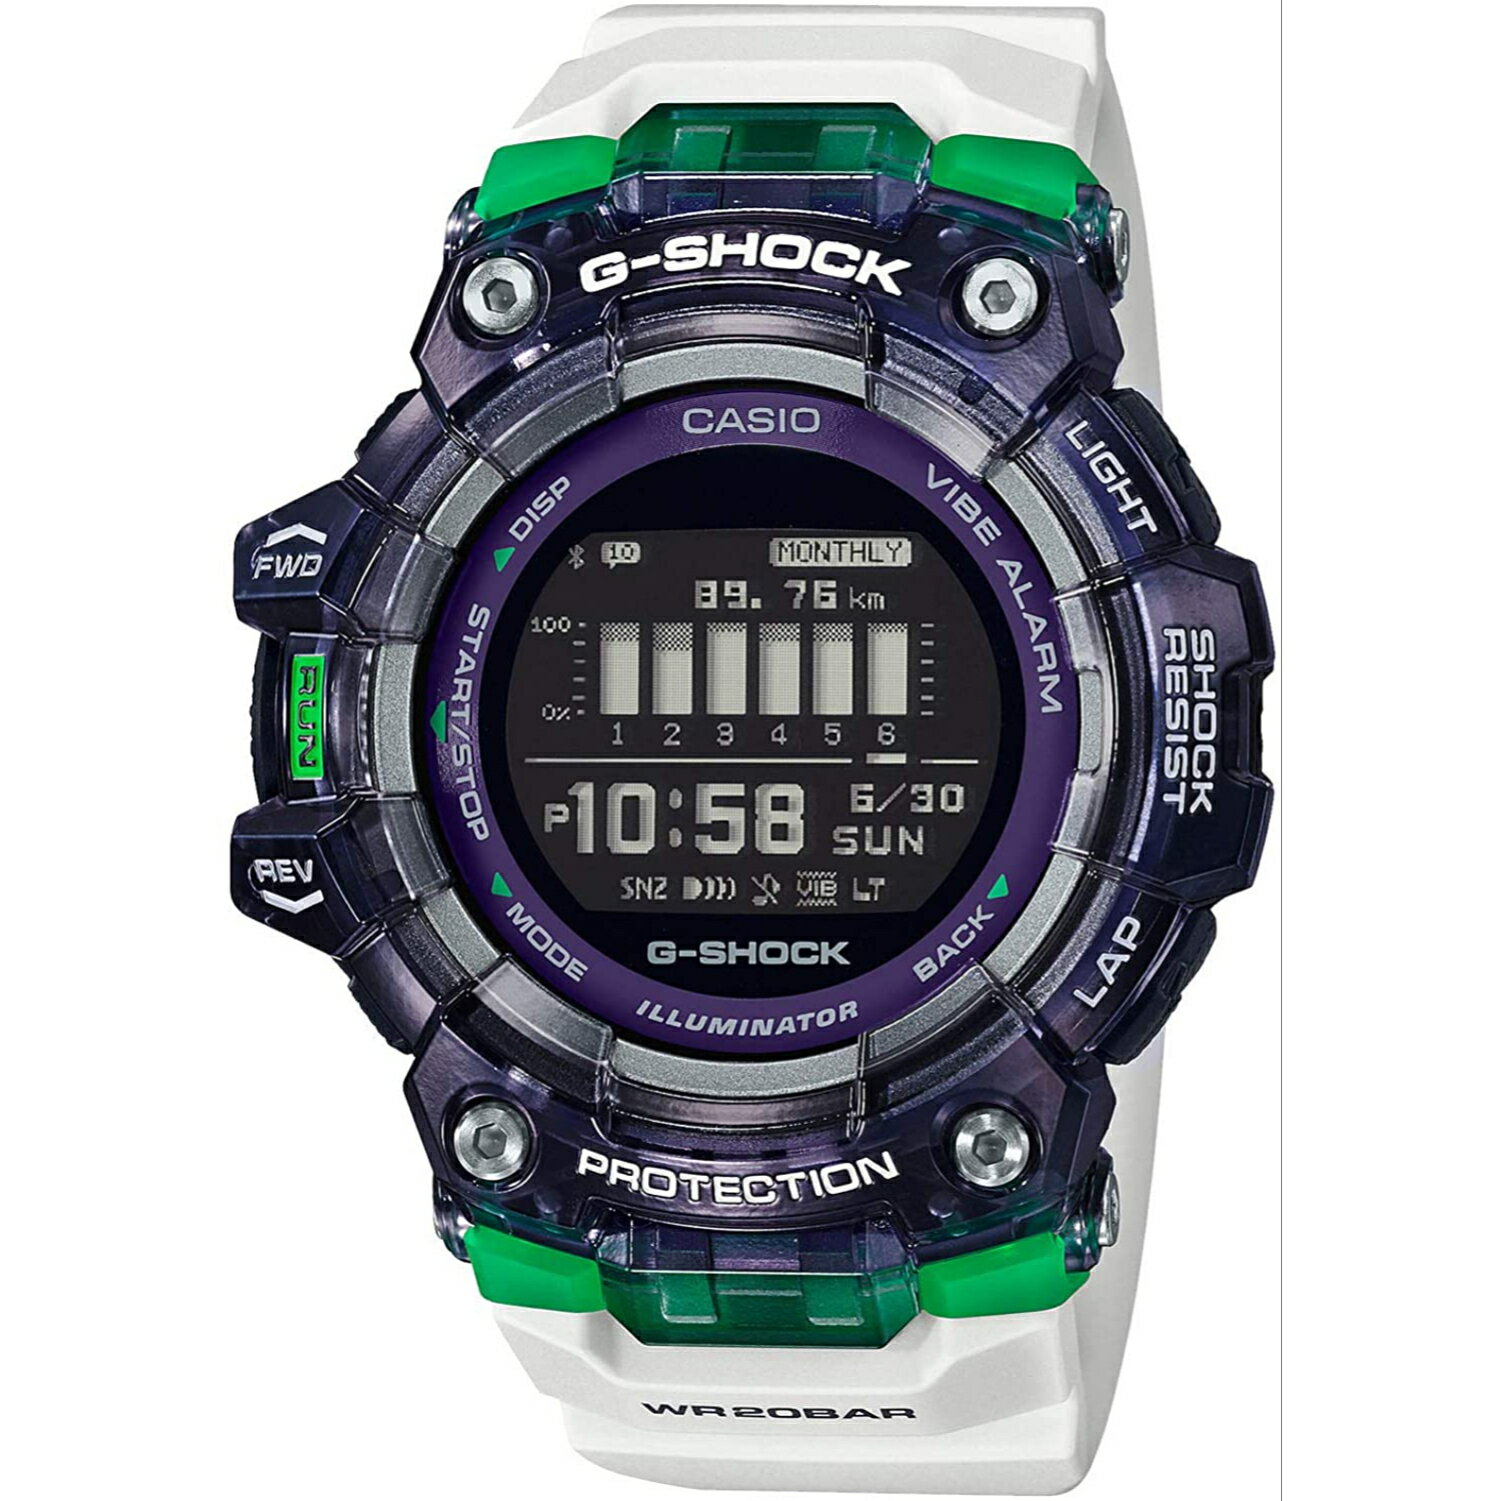 G-SHOCK Gショック GBD-100SM-1A7 G-SQUAD Gスクワッド スマートフォンリンク Bluetooth ランニング デジタル カシオ 腕時計 メンズ